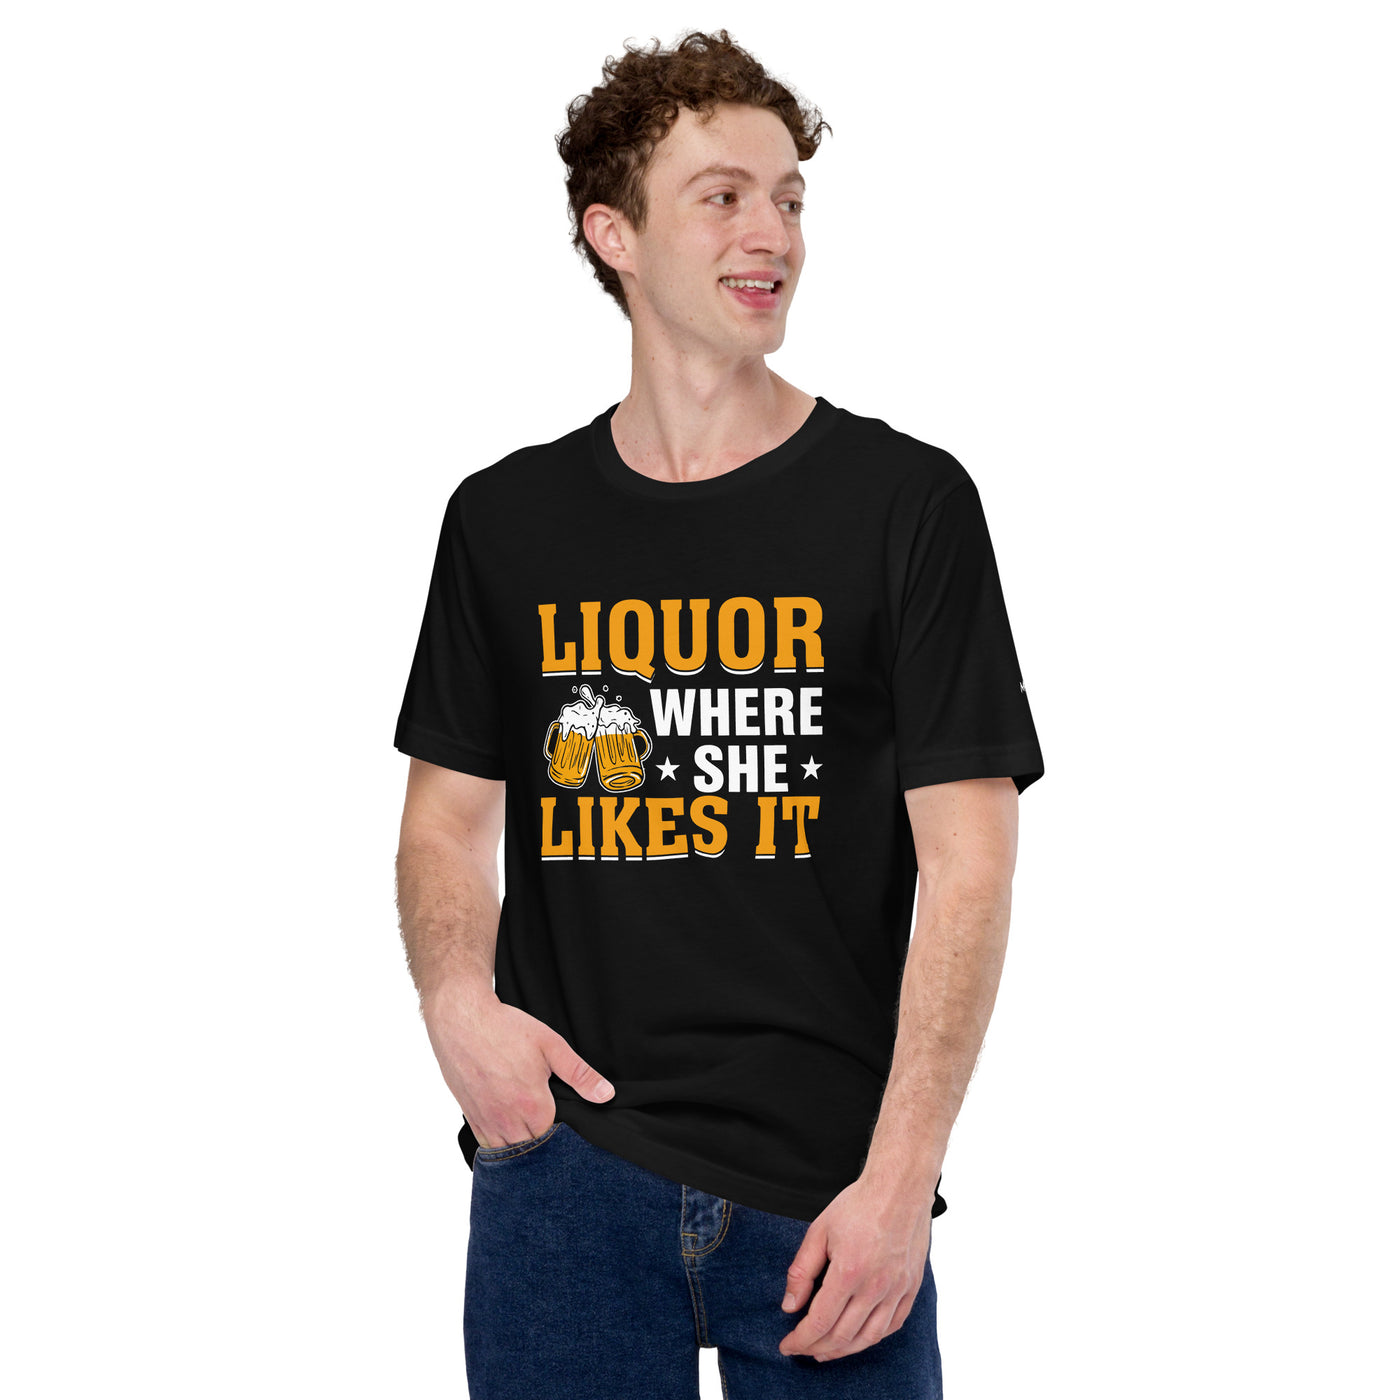 Liquor where she likes it - Unisex t-shirt